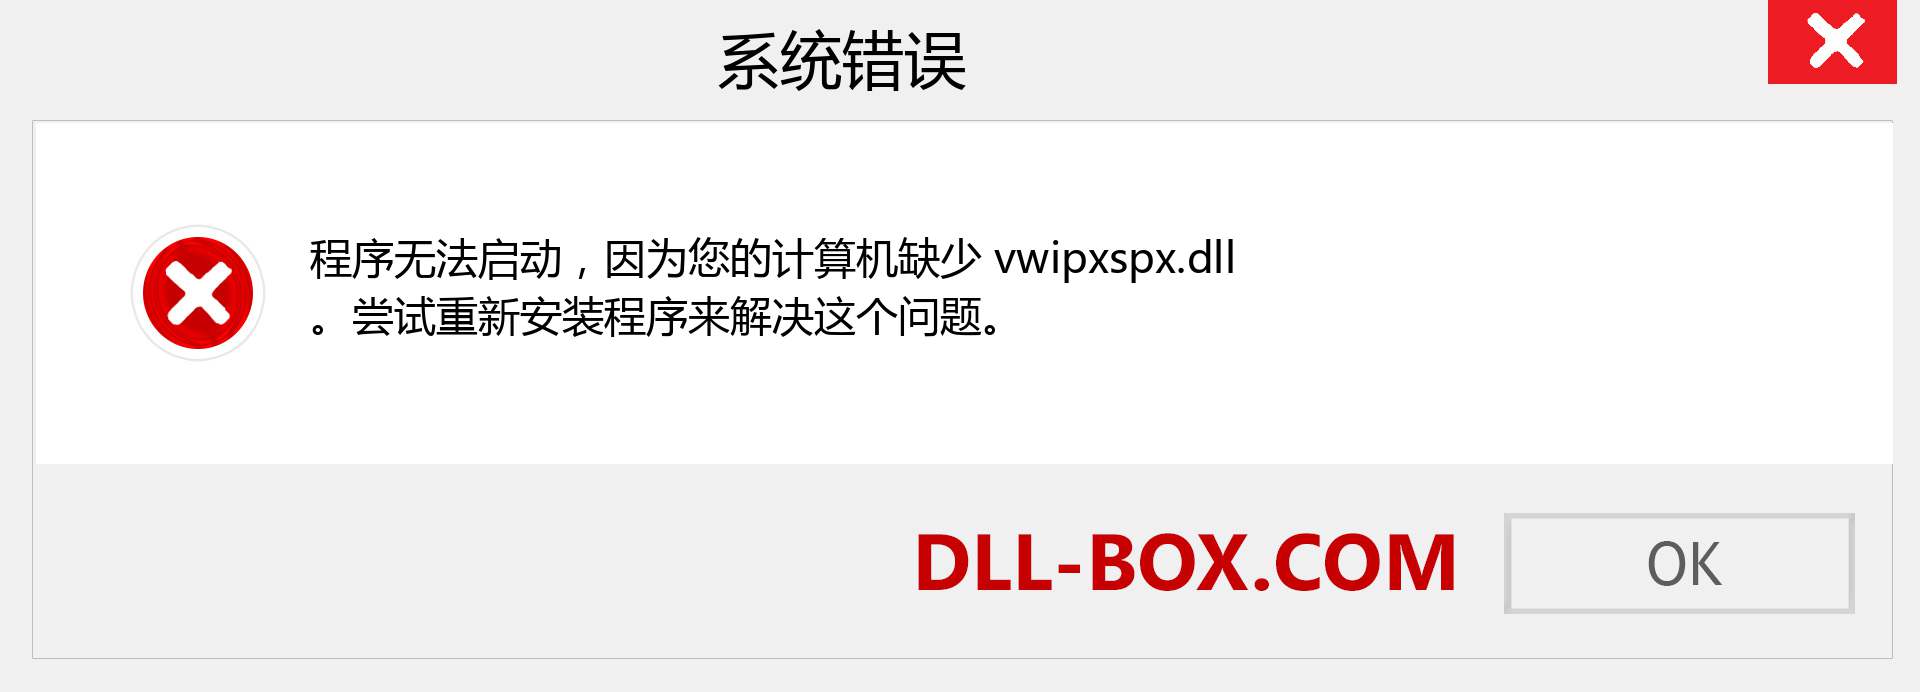 vwipxspx.dll 文件丢失？。 适用于 Windows 7、8、10 的下载 - 修复 Windows、照片、图像上的 vwipxspx dll 丢失错误